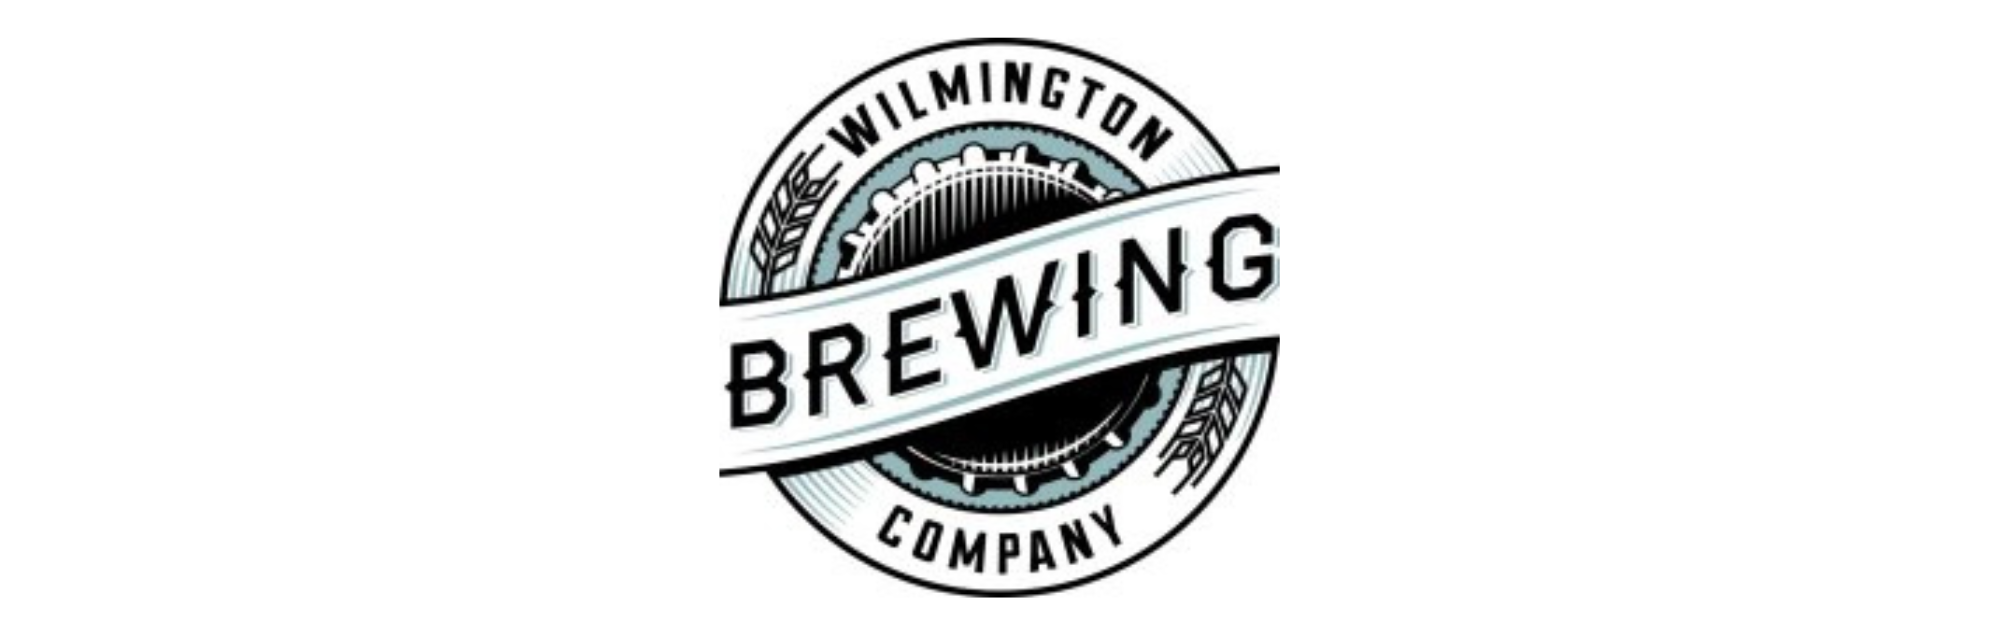 Wilmington Brewing Company